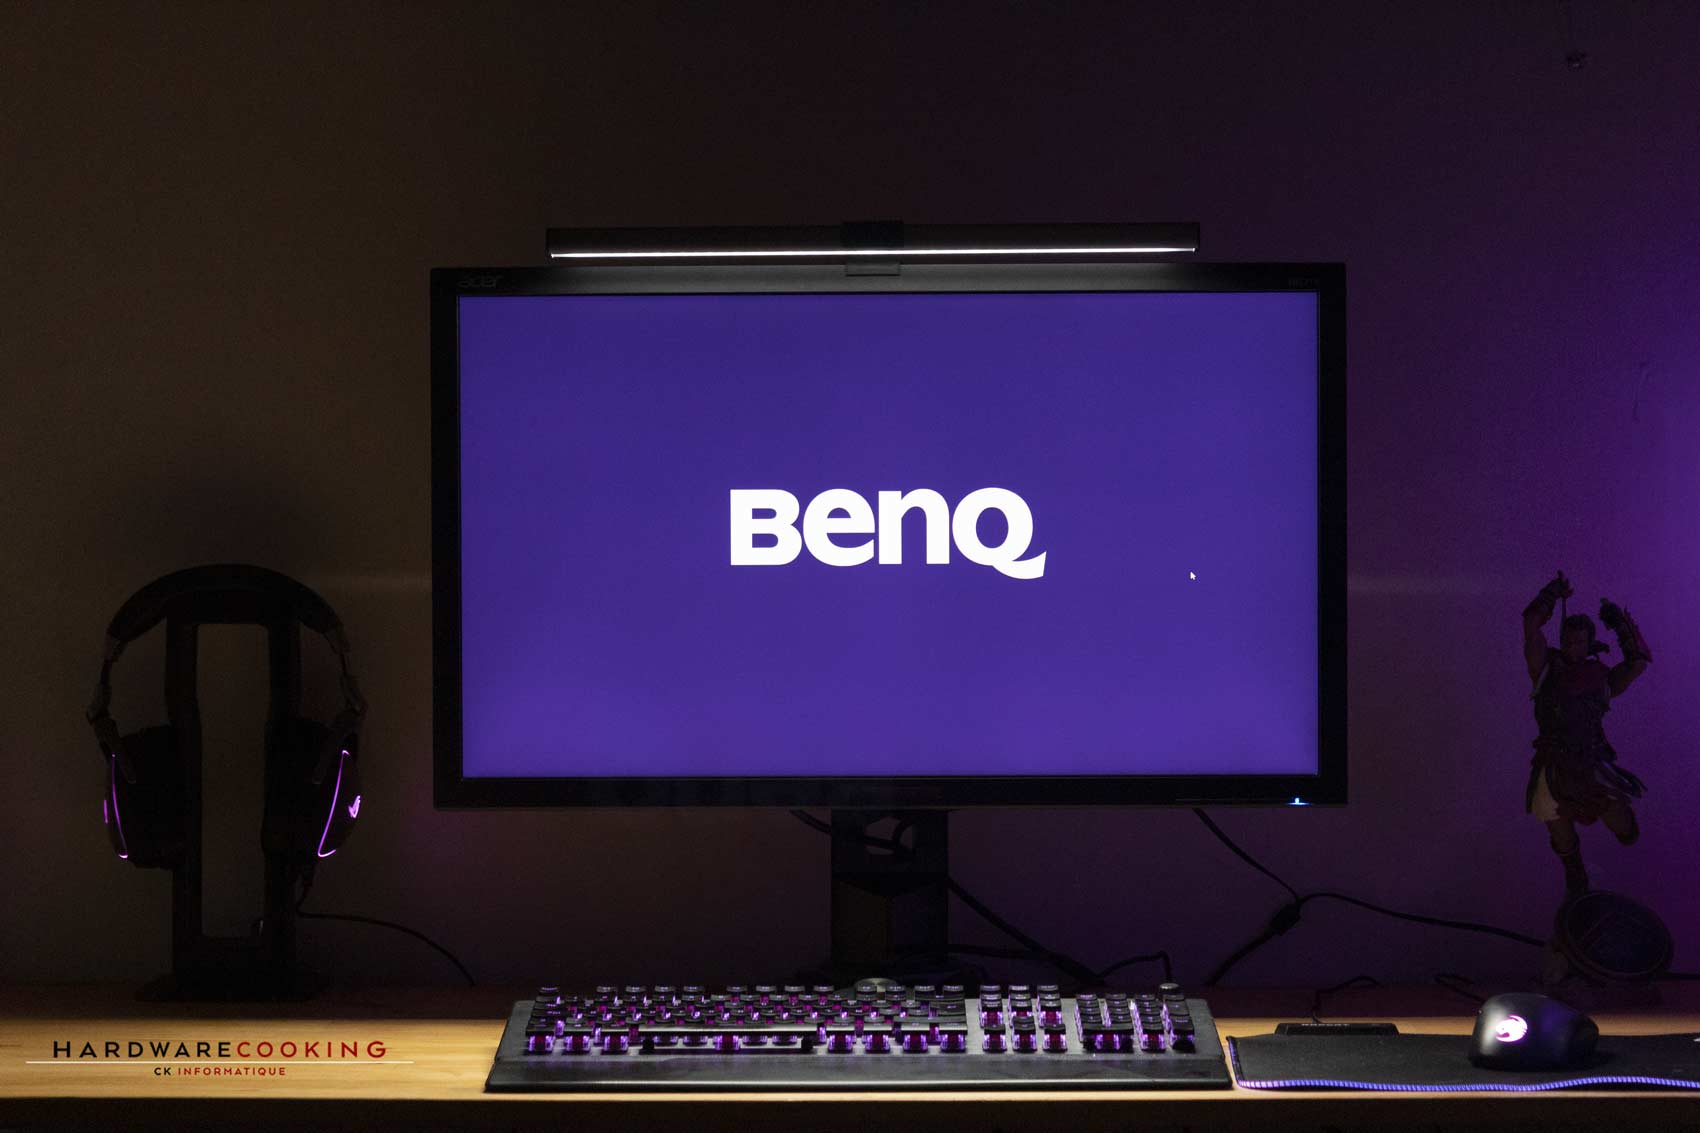 Test ScreenBar Plus de BenQ : la lampe de bureau LED qui sait se faire  oublier